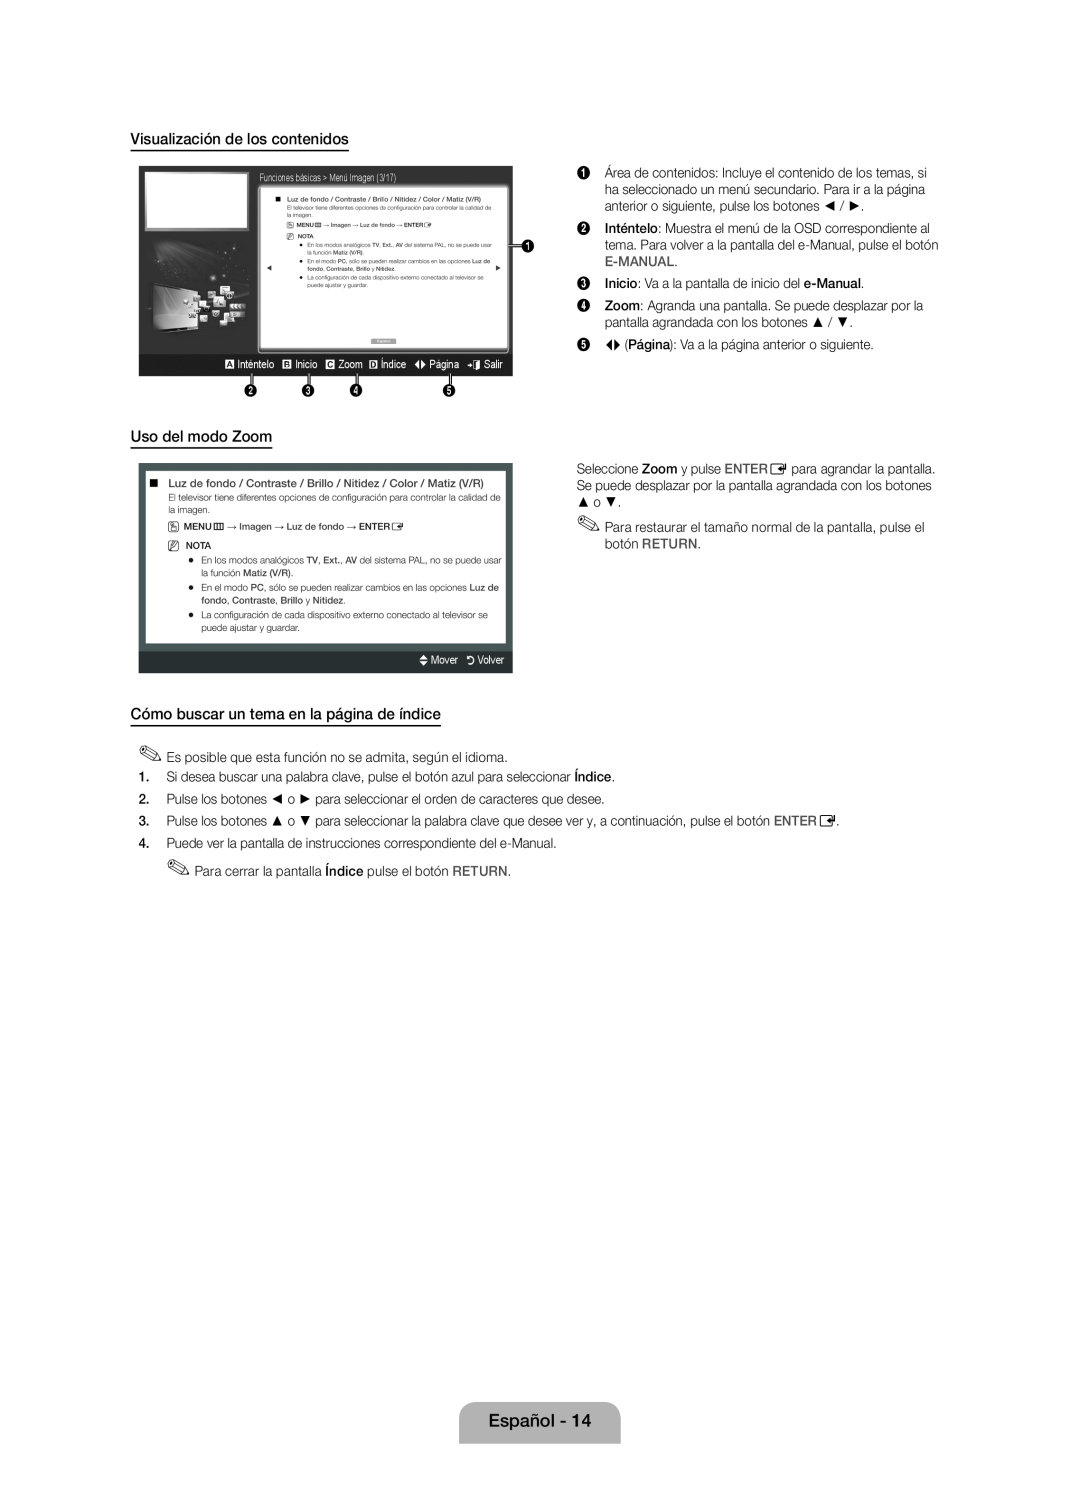 Samsung UE40D5000PWXXH Visualización de los contenidos, Uso del modo Zoom, Cómo buscar un tema en la página de índice 